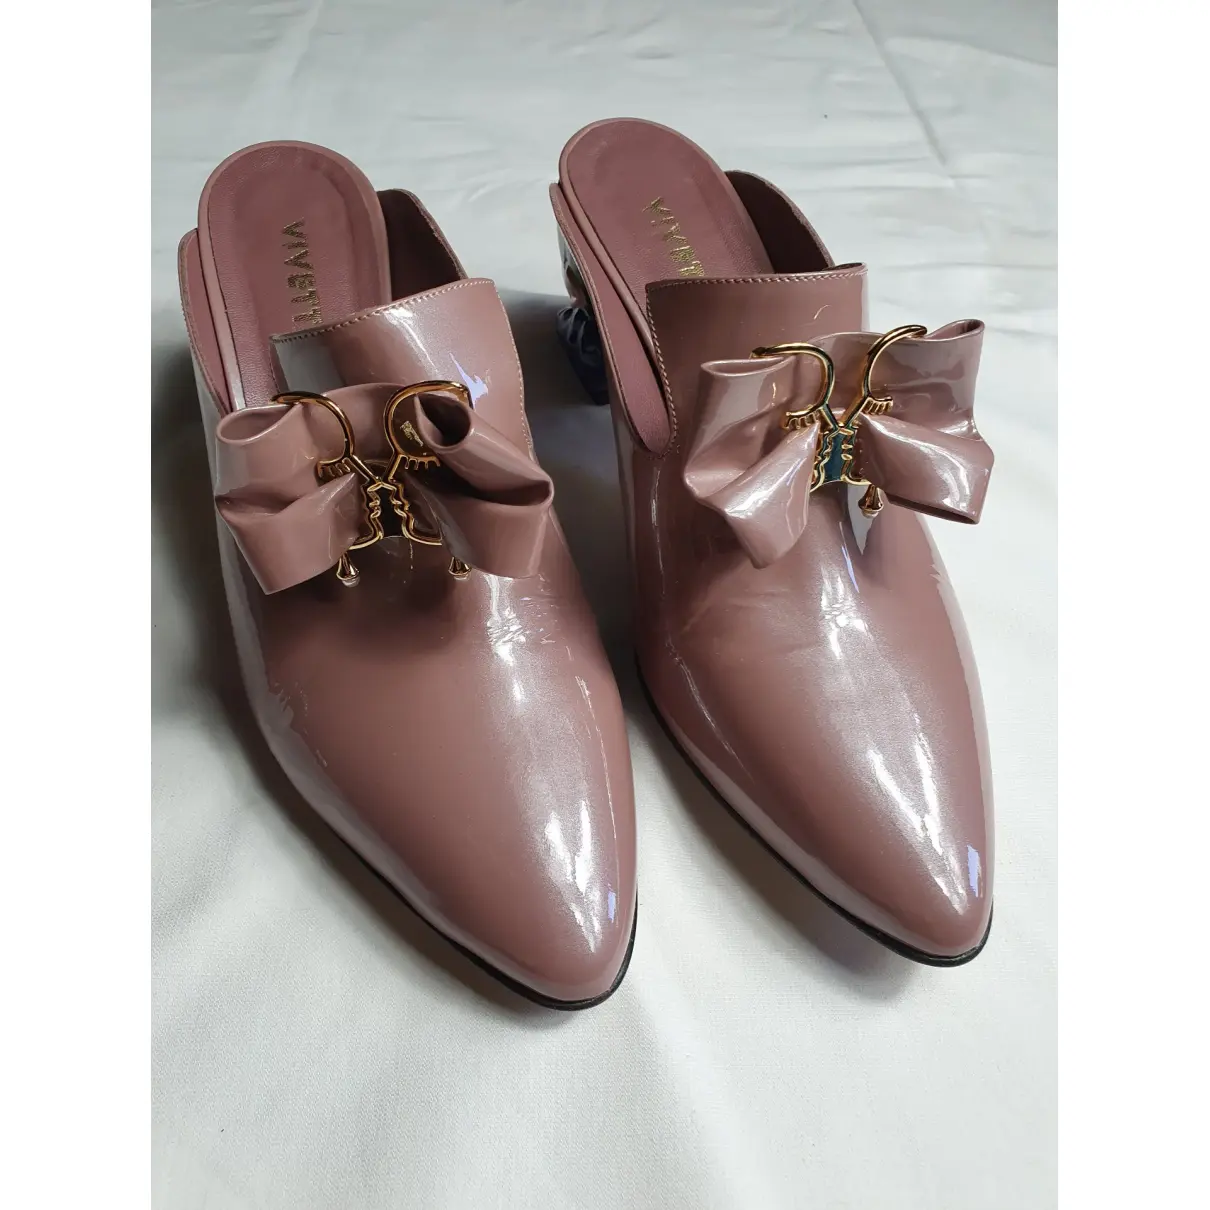 Leather heels Vivetta